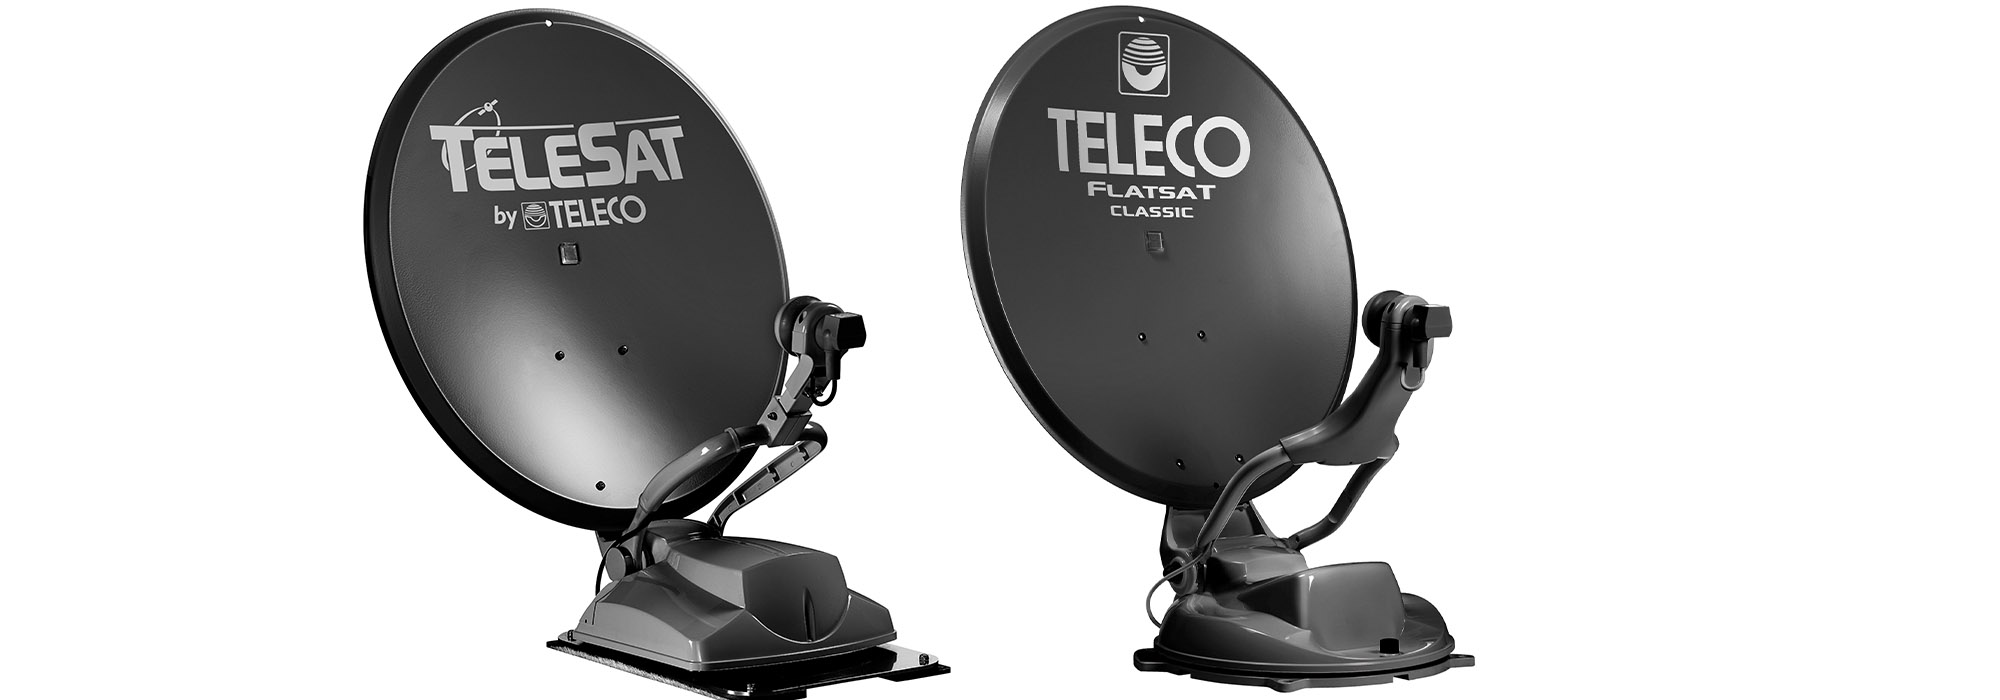 La gamma Total Black di Teleco si arricchisce  con le antenne automatiche Flatsat Classic BT 65 e Telesat BT 65